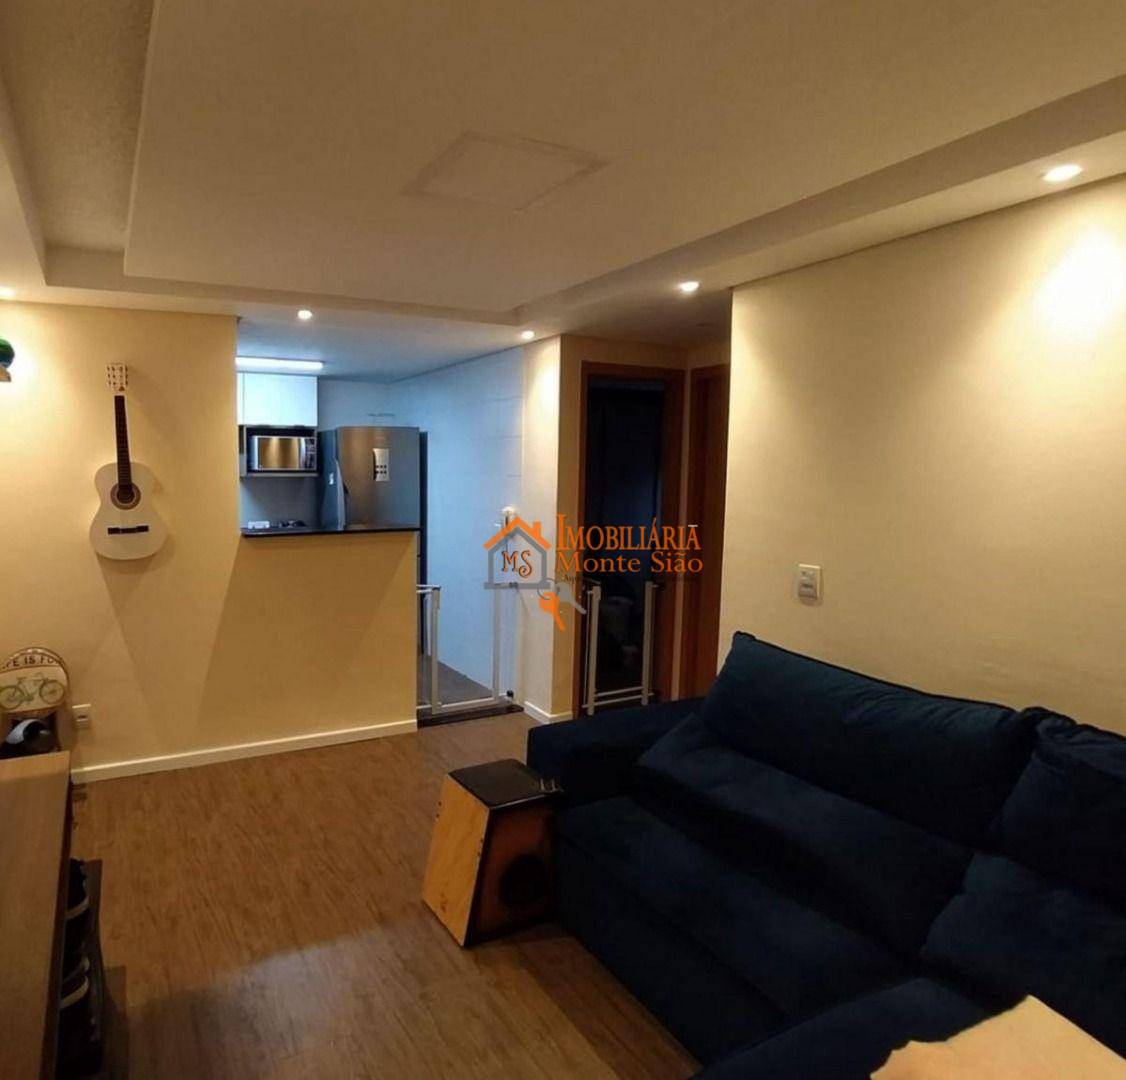 Apartamento com 2 dormitórios à venda, 42 m² por R$ 250.000,00 - Água Chata - Guarulhos/SP